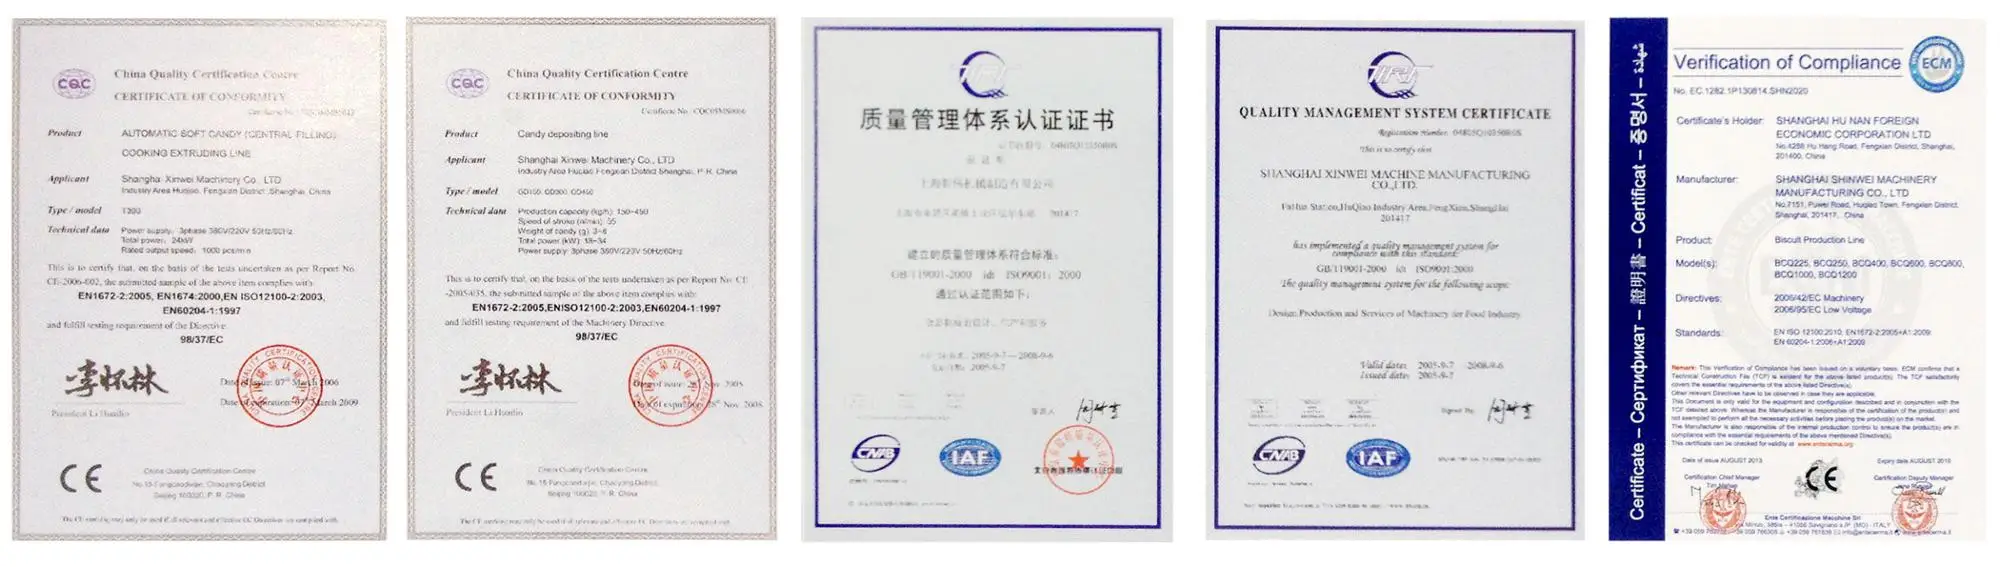 Sec certificate. Сертификат CQC.